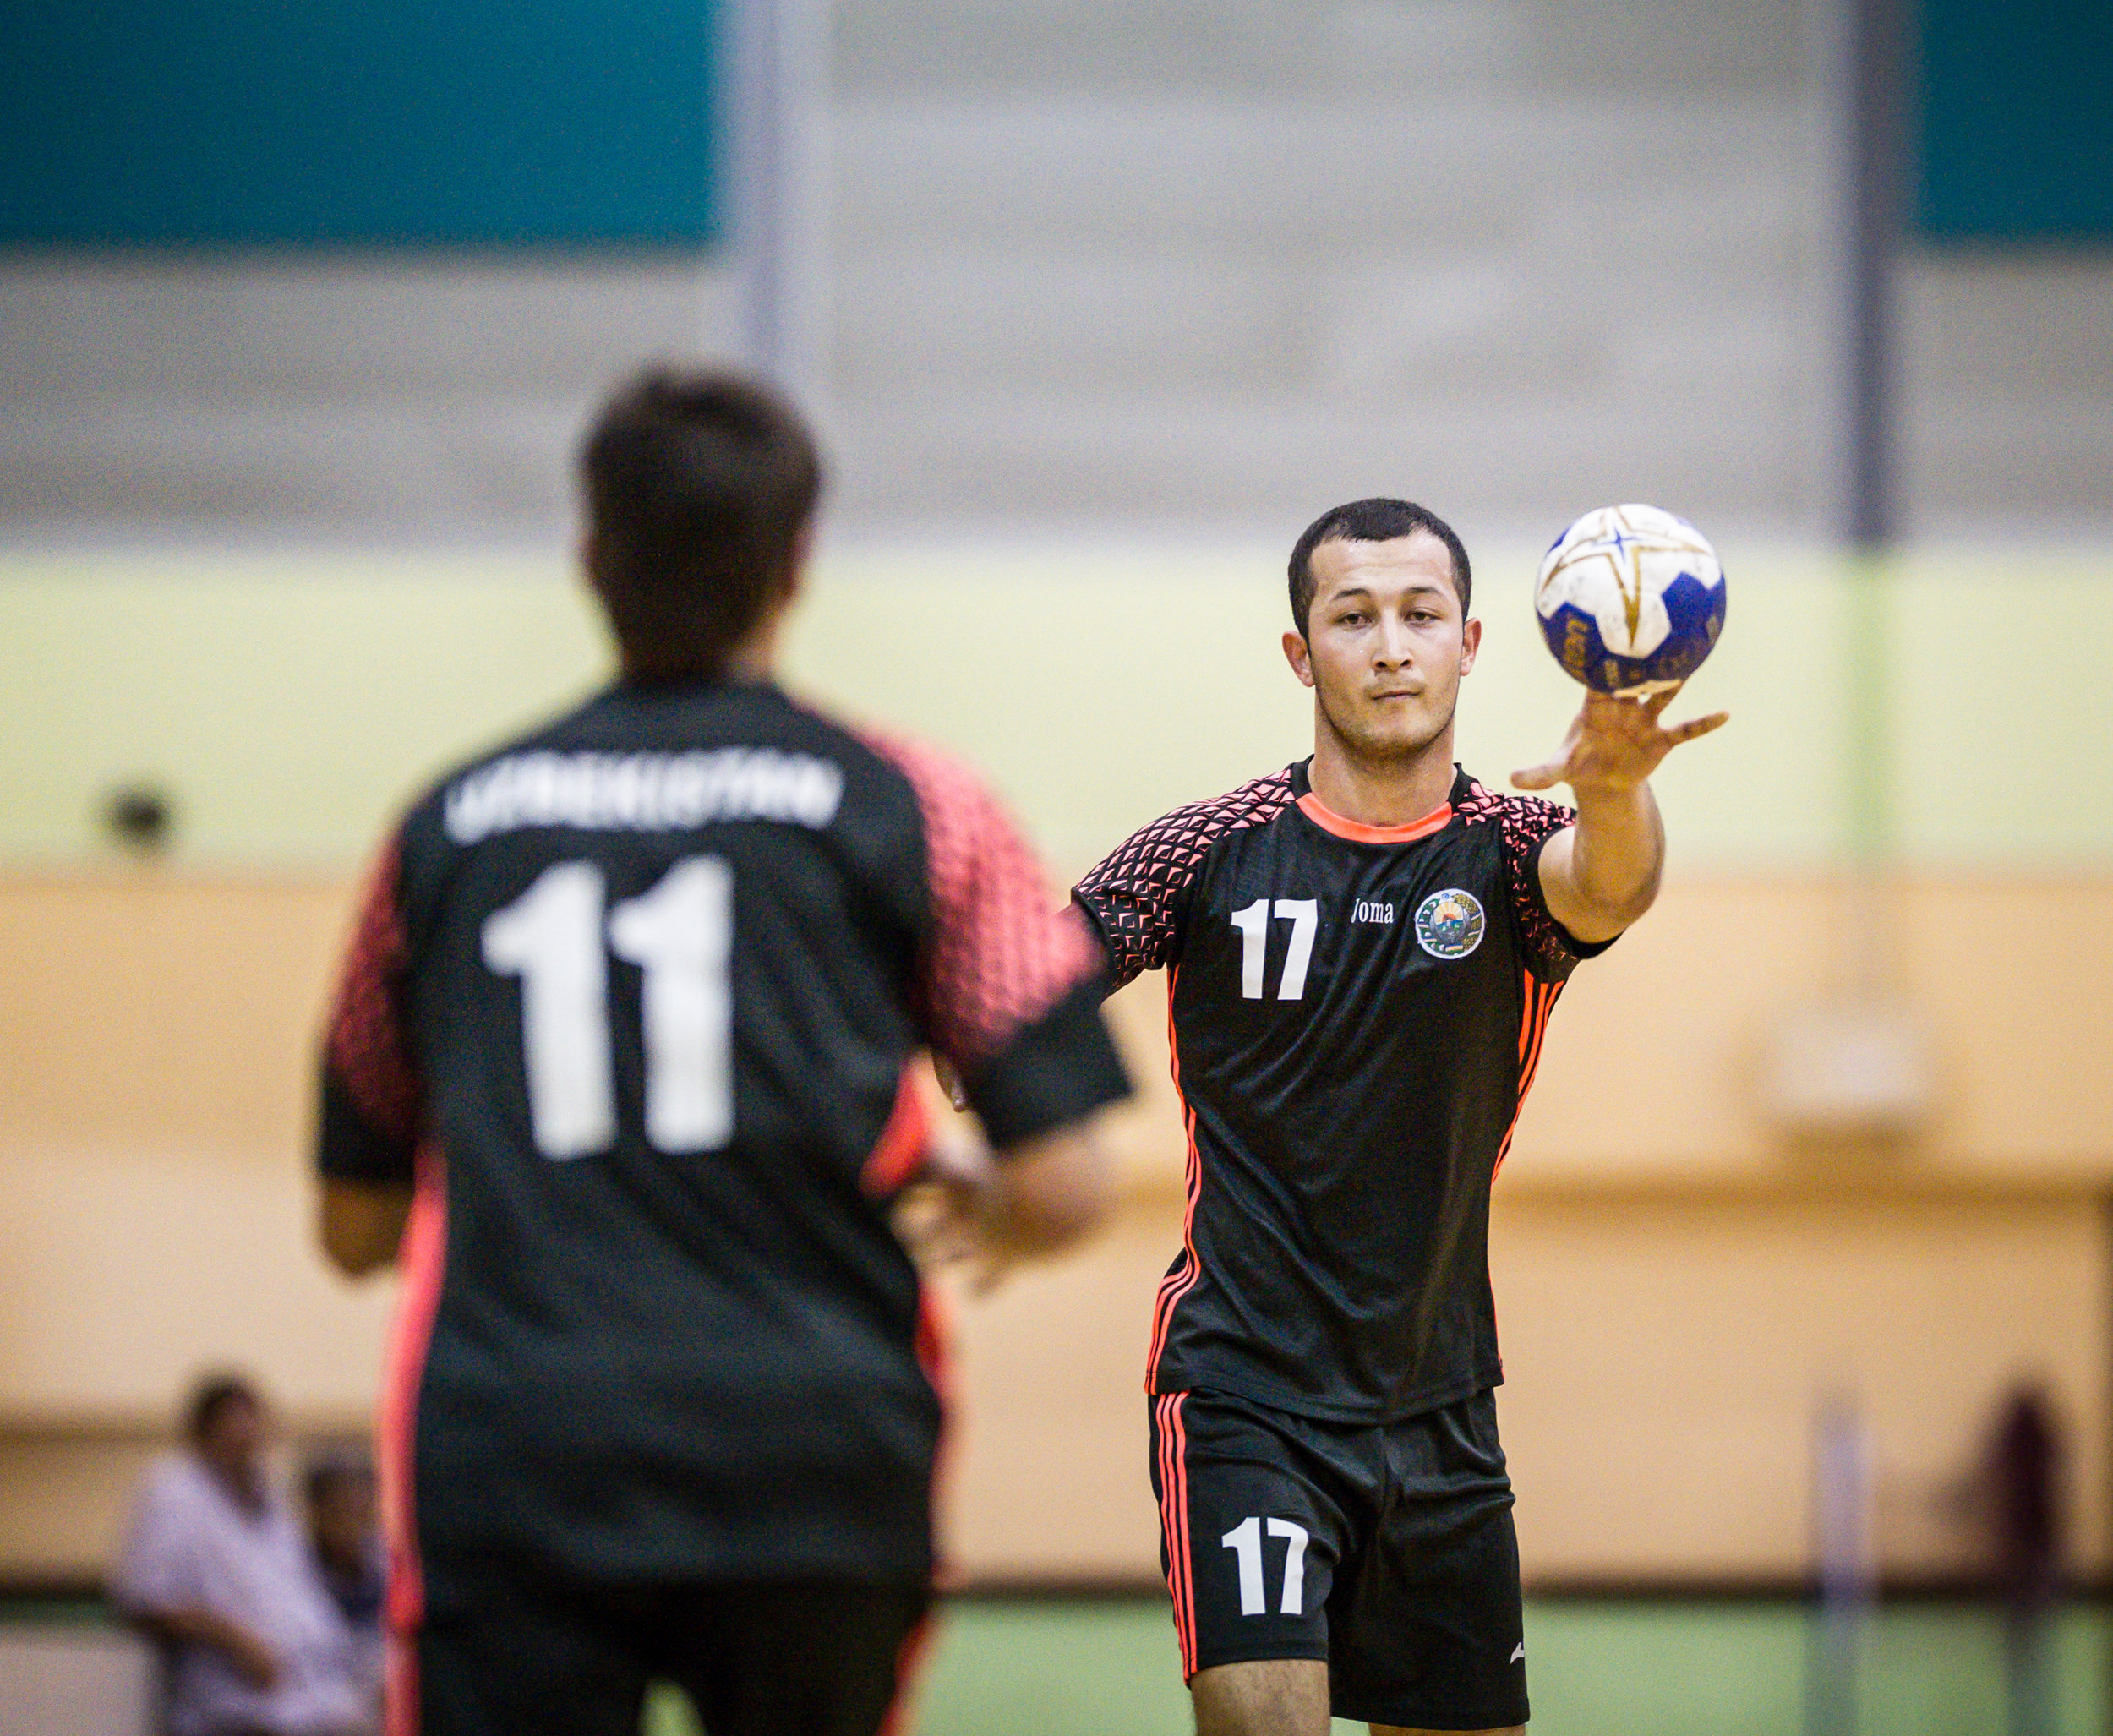 An Uzbek player passes the ball to a team mate during an International hand ball match at the Sengkang Sports Complex.